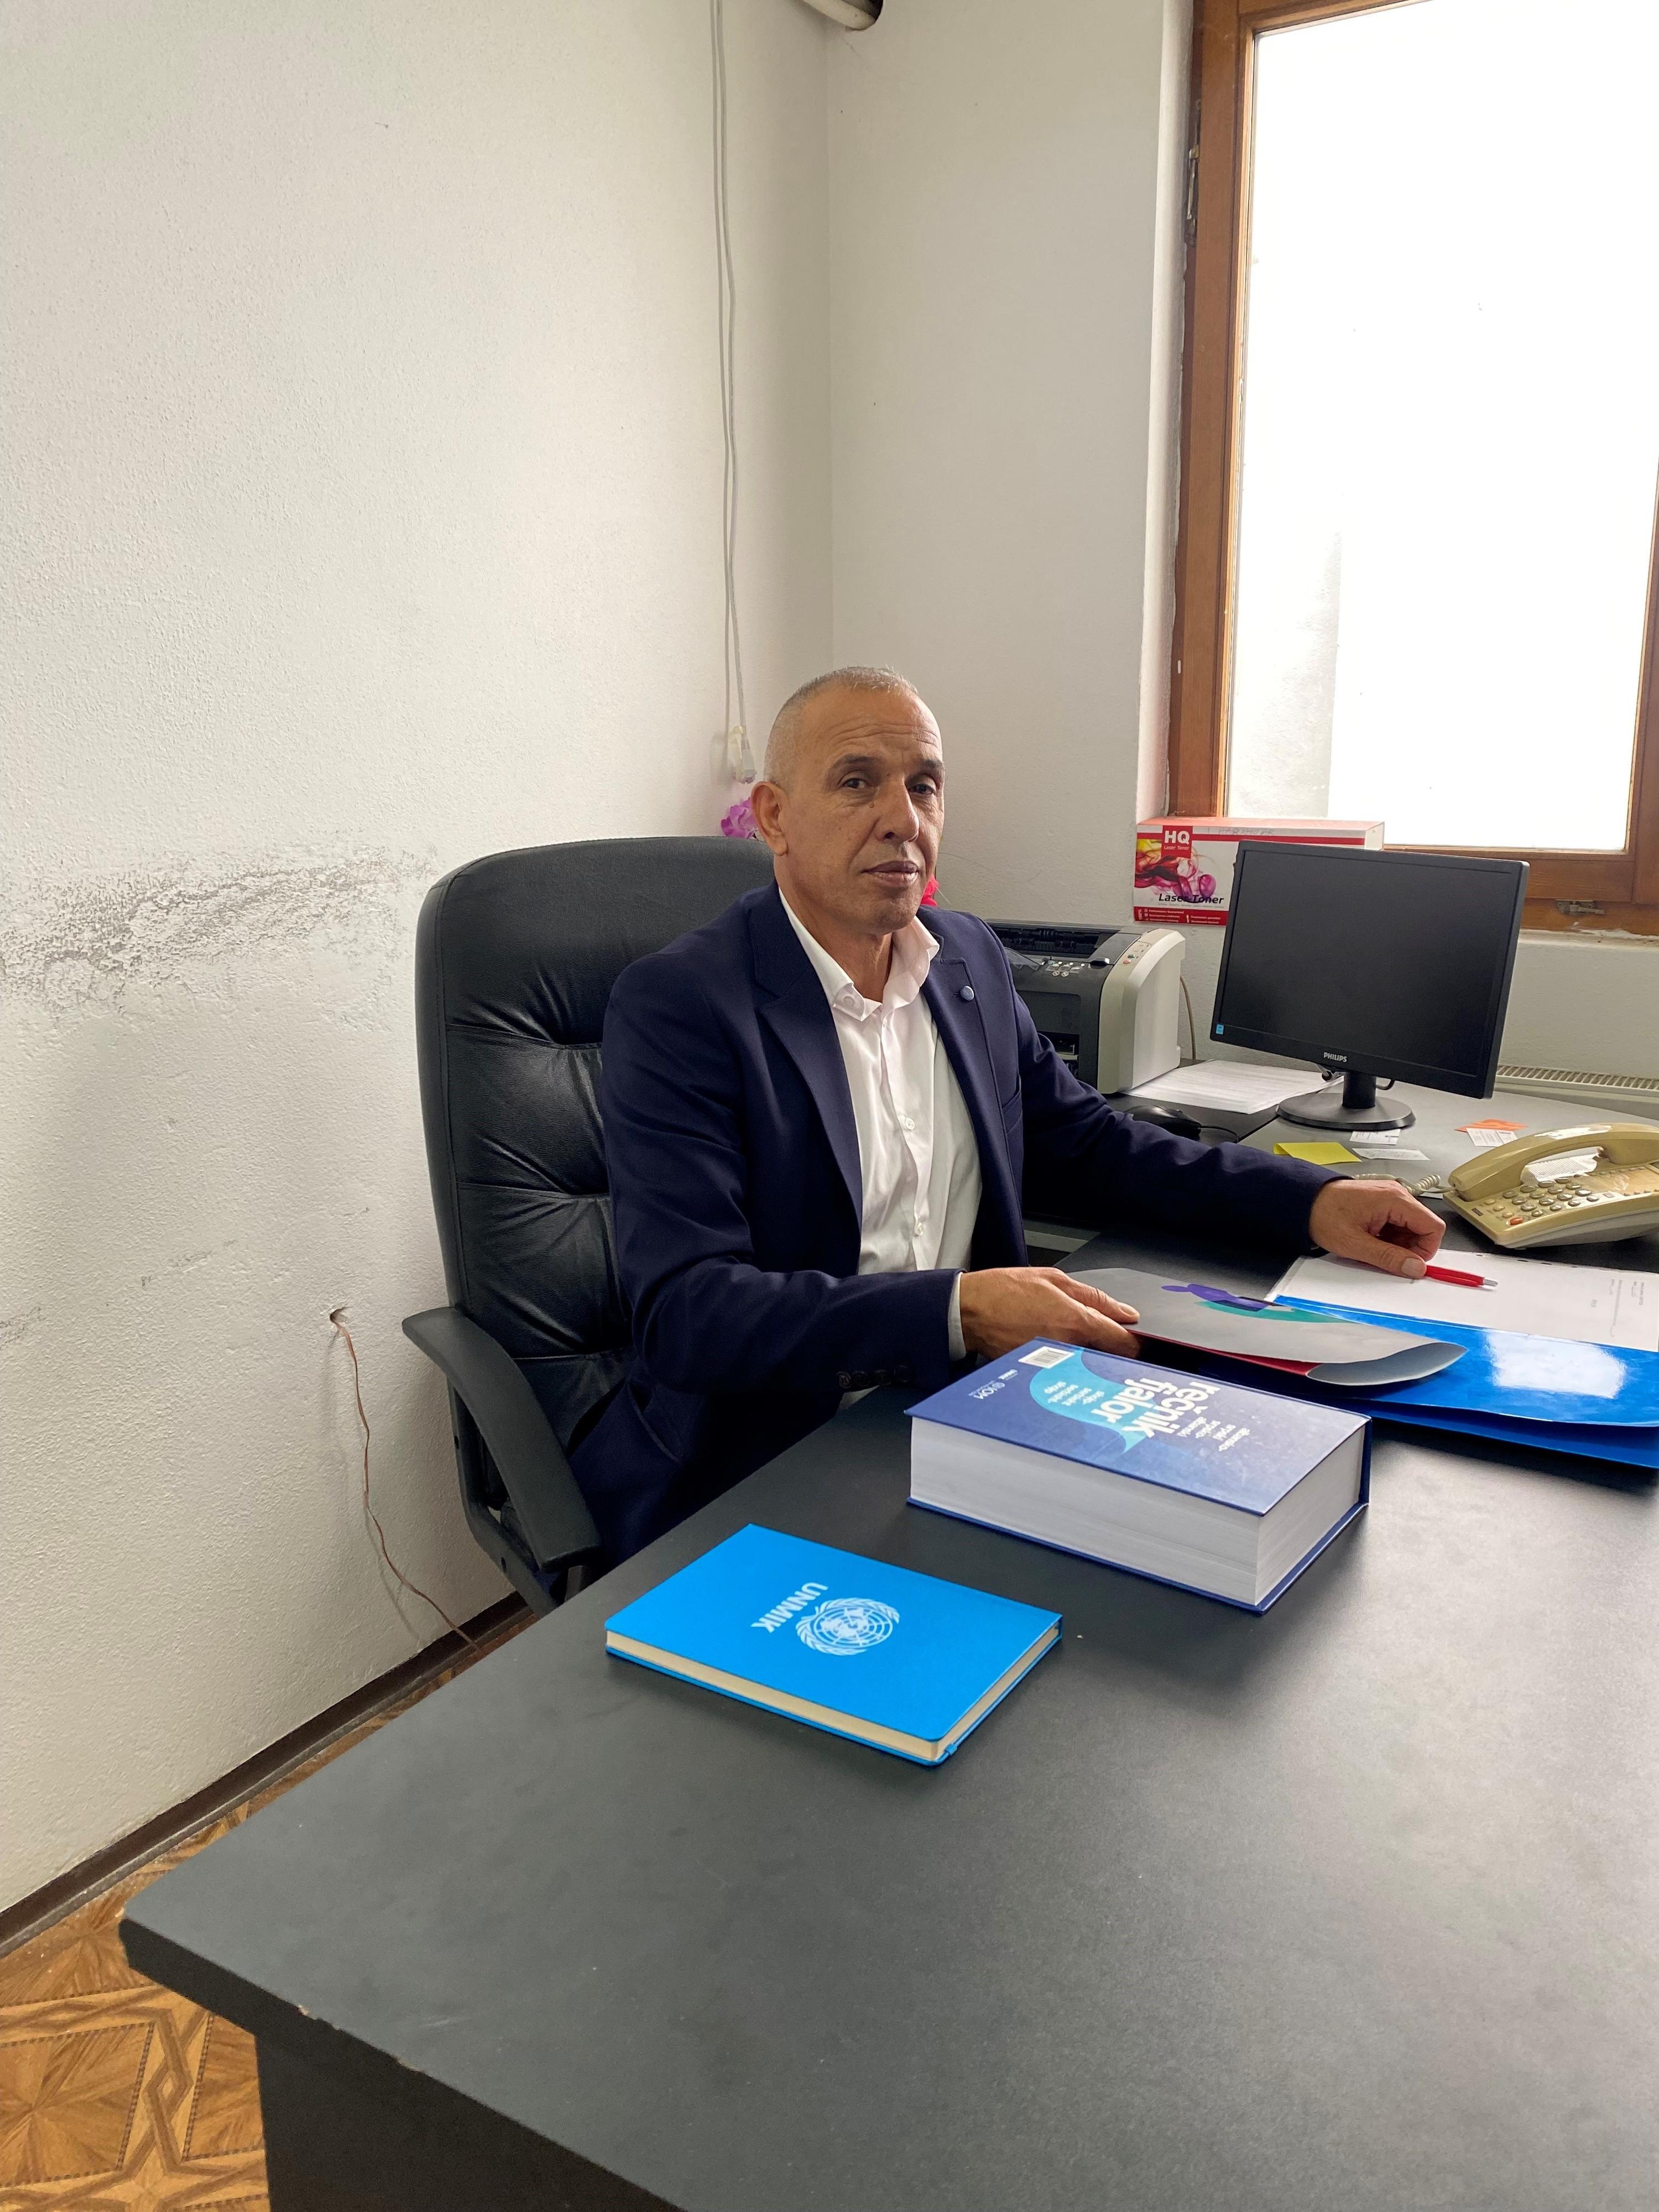 Izmir Zeqiri, maire albanais élu dans la localité serbe de Zubin Potok, au Kosovo, avec un taux de participation de 3%, dans son bureau installé dans un village albanais. [RTS - Alexandre Habay]